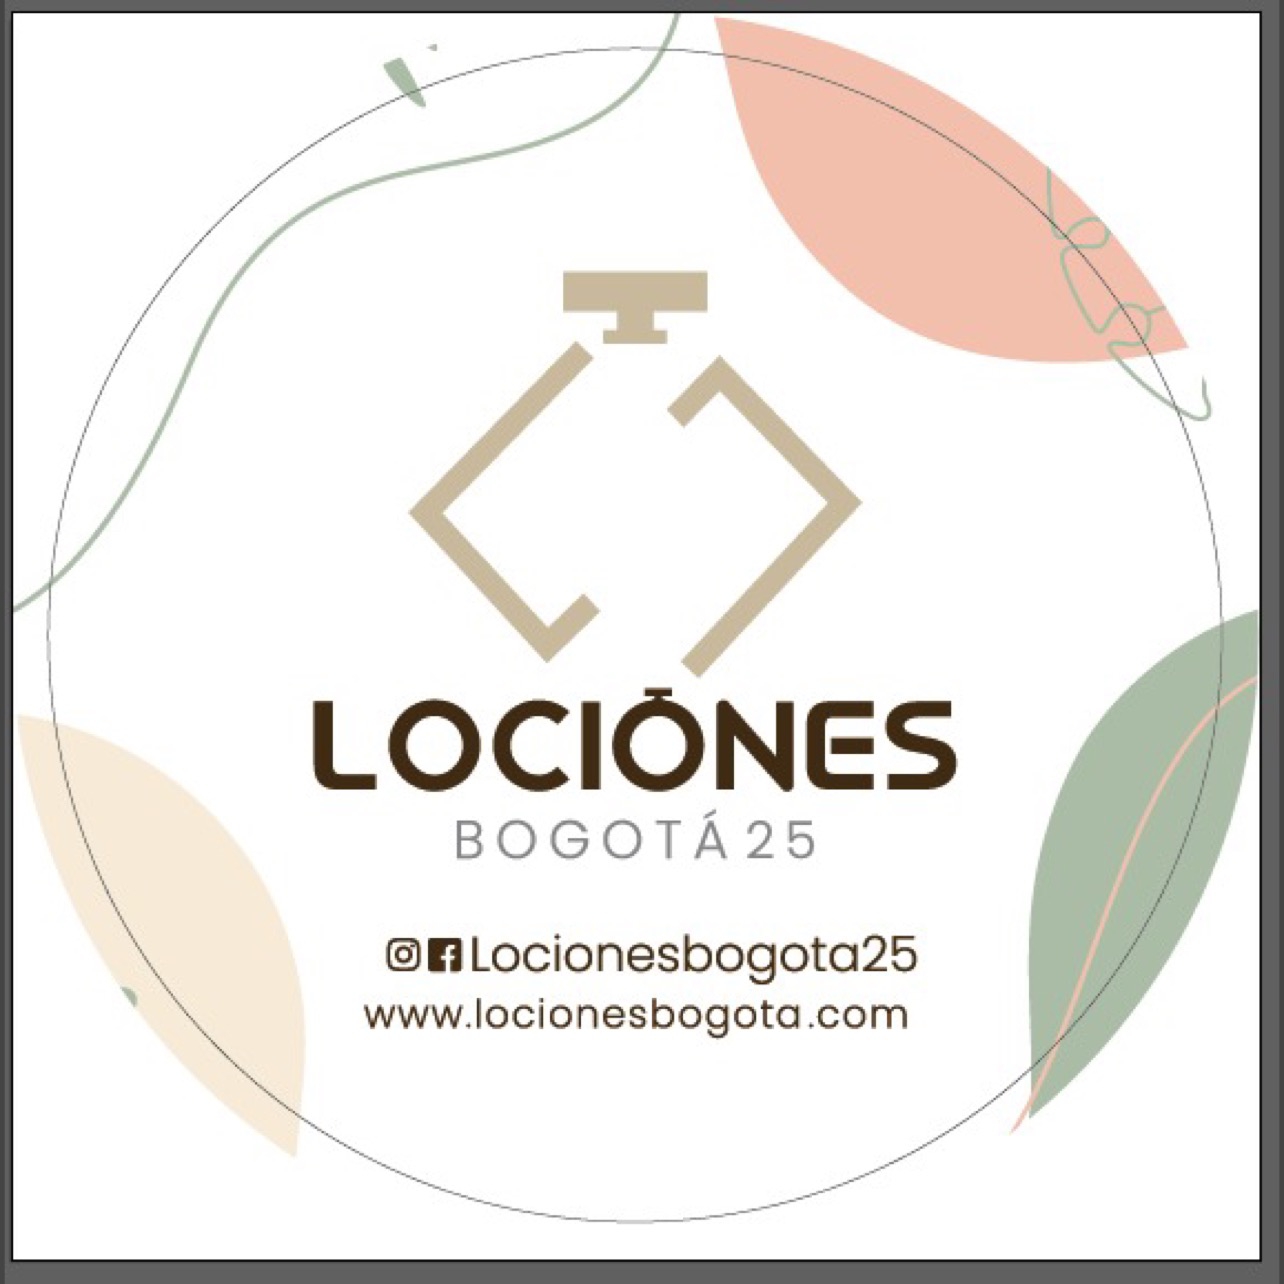 Locionesbogota25